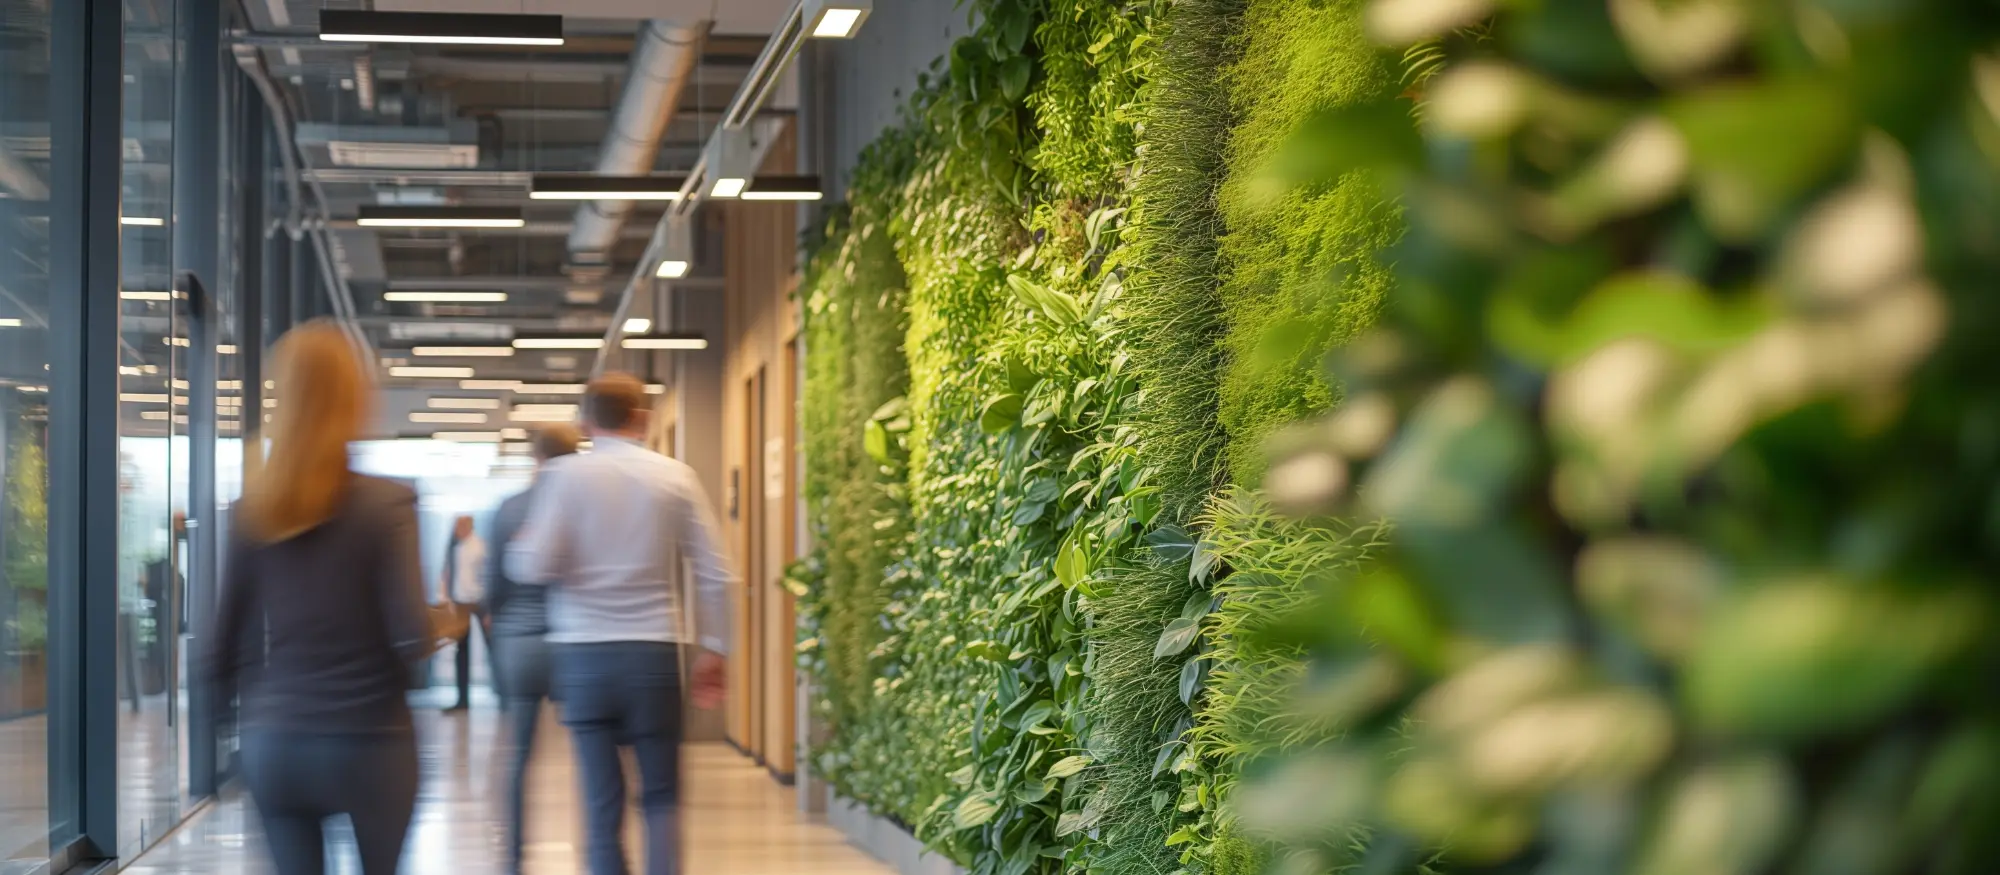 Mennesker som går nedover i et lyst kontorlokale med vegg dekket av grønne planter til høyre